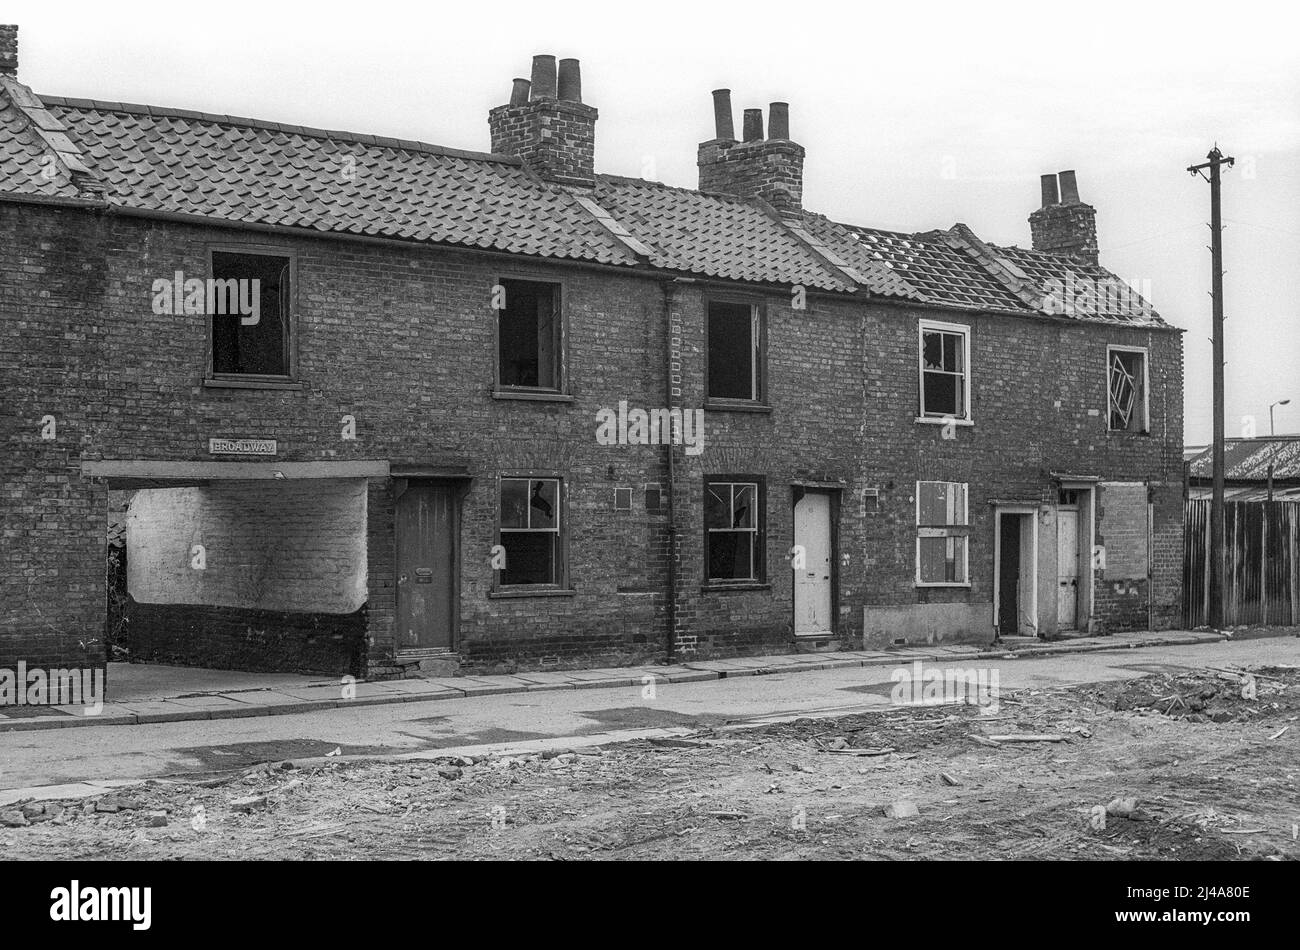 Photographie d'archives de maisons démolies et démolies en partie dans Kirby Street, King's Lynn. L'image est un scan du négatif noir et blanc original pris en février 1976. Banque D'Images